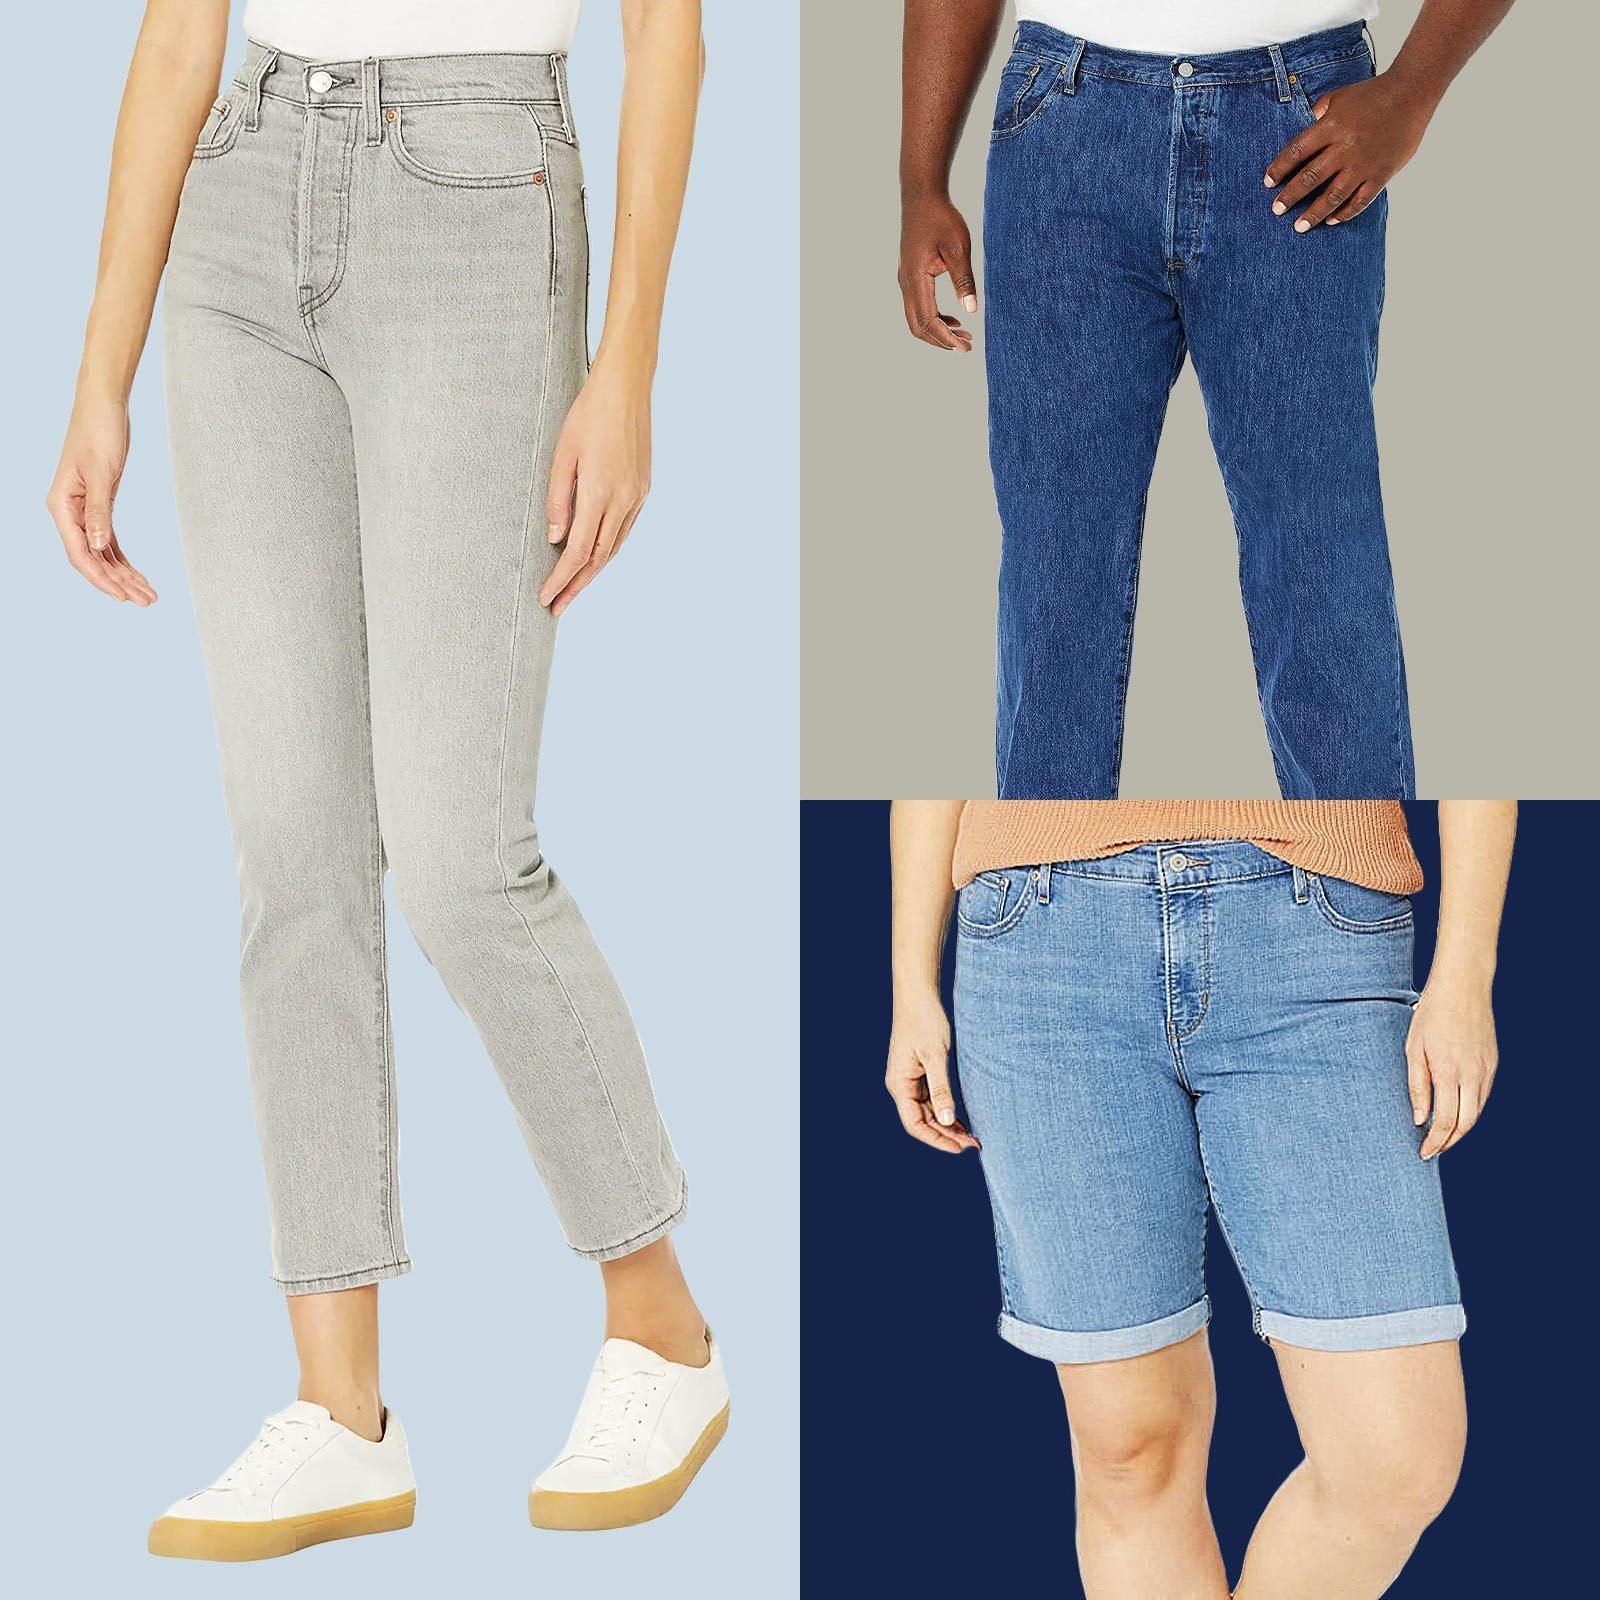 https://www.rd.com/wp-content/uploads/2023/04/RD-ecomm-Levis-Jeans-sale-FT-via-merchant-3.jpg